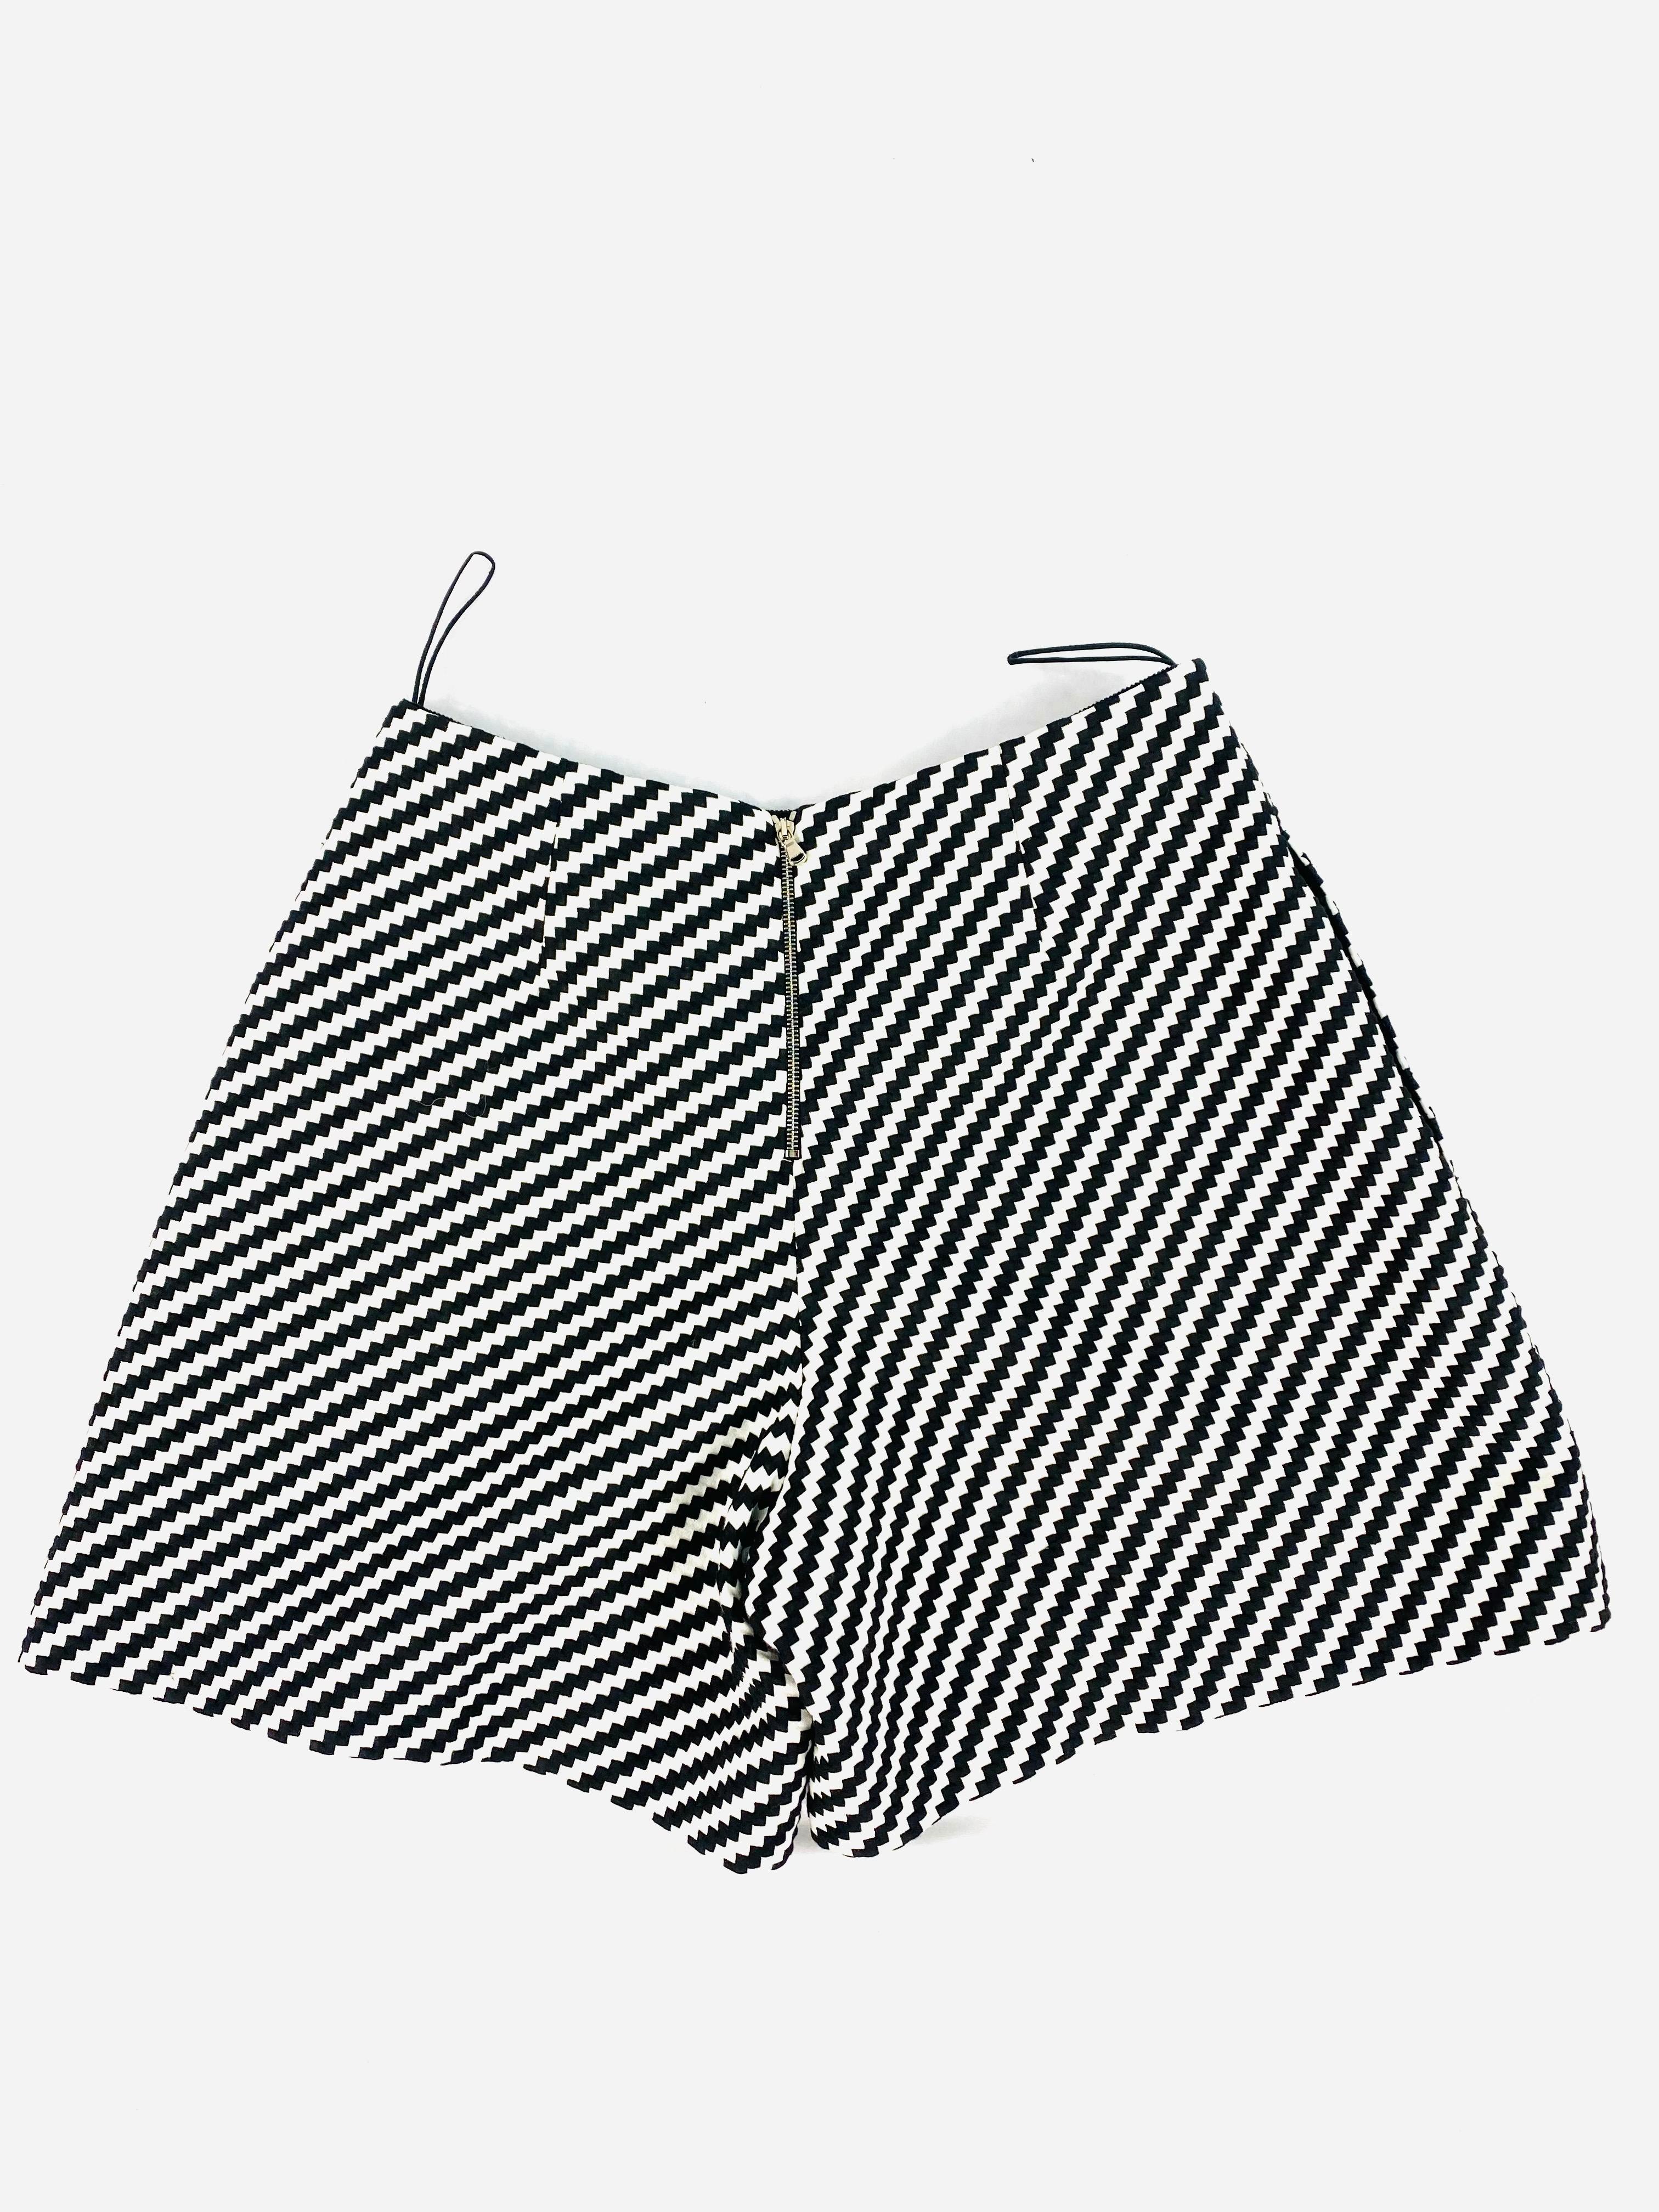 Einzelheiten zum Produkt:

Die Shorts mit geometrischem Muster in Schwarz und Weiß haben eine Minilänge und einen Reißverschluss mit silberfarbener Hardware auf der Rückseite.